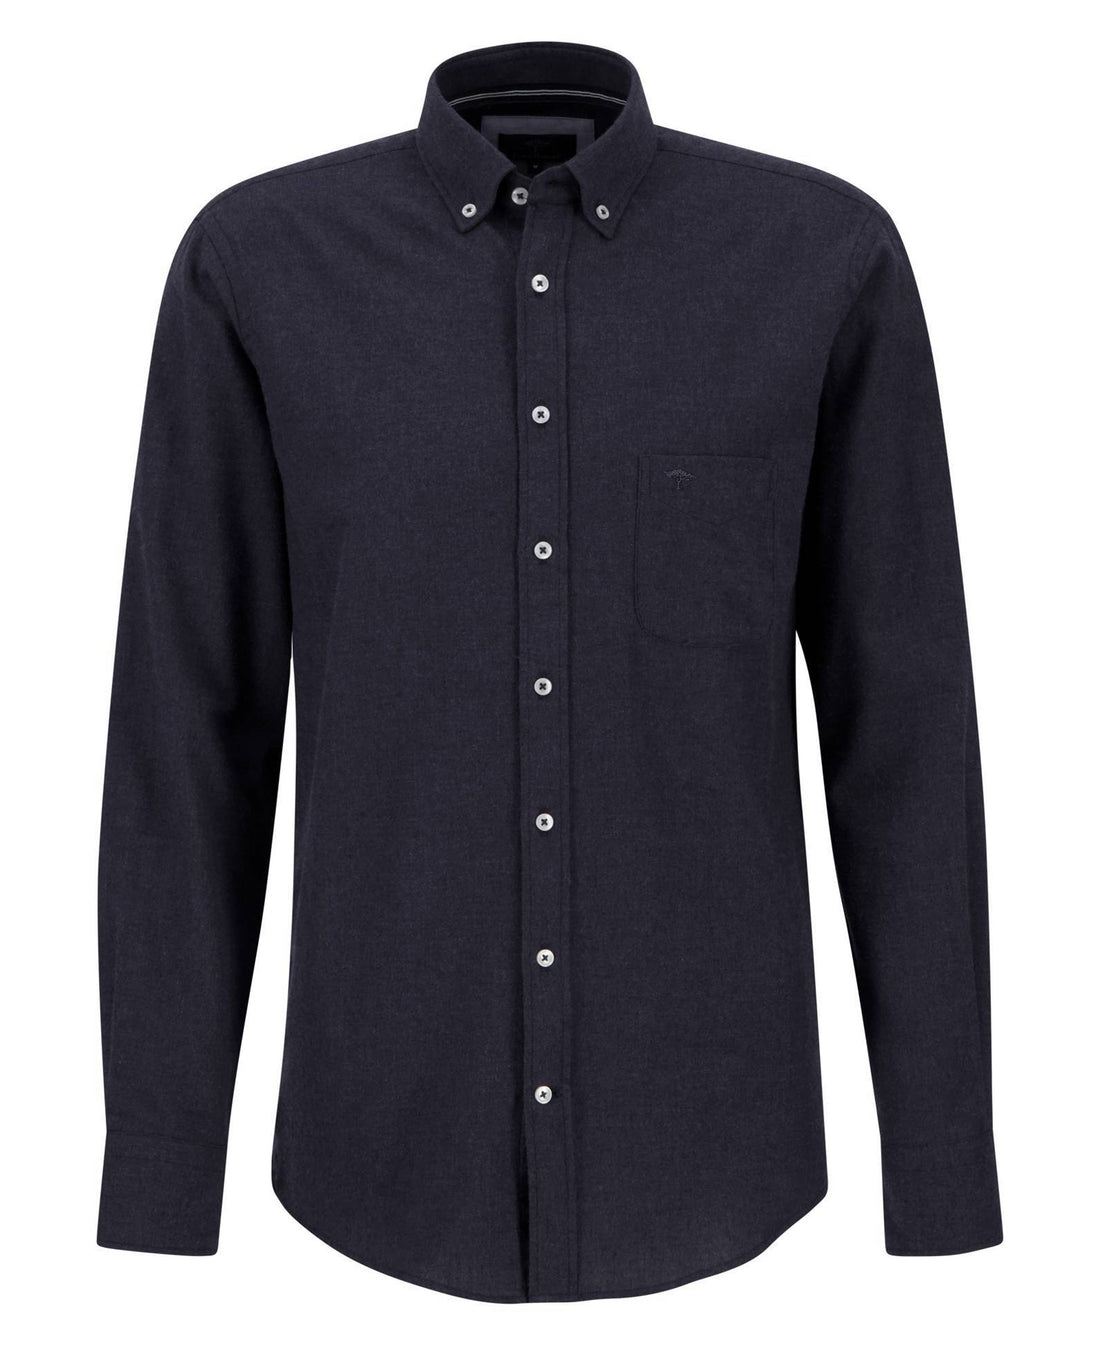 Premium Flannel Shirt - Navy